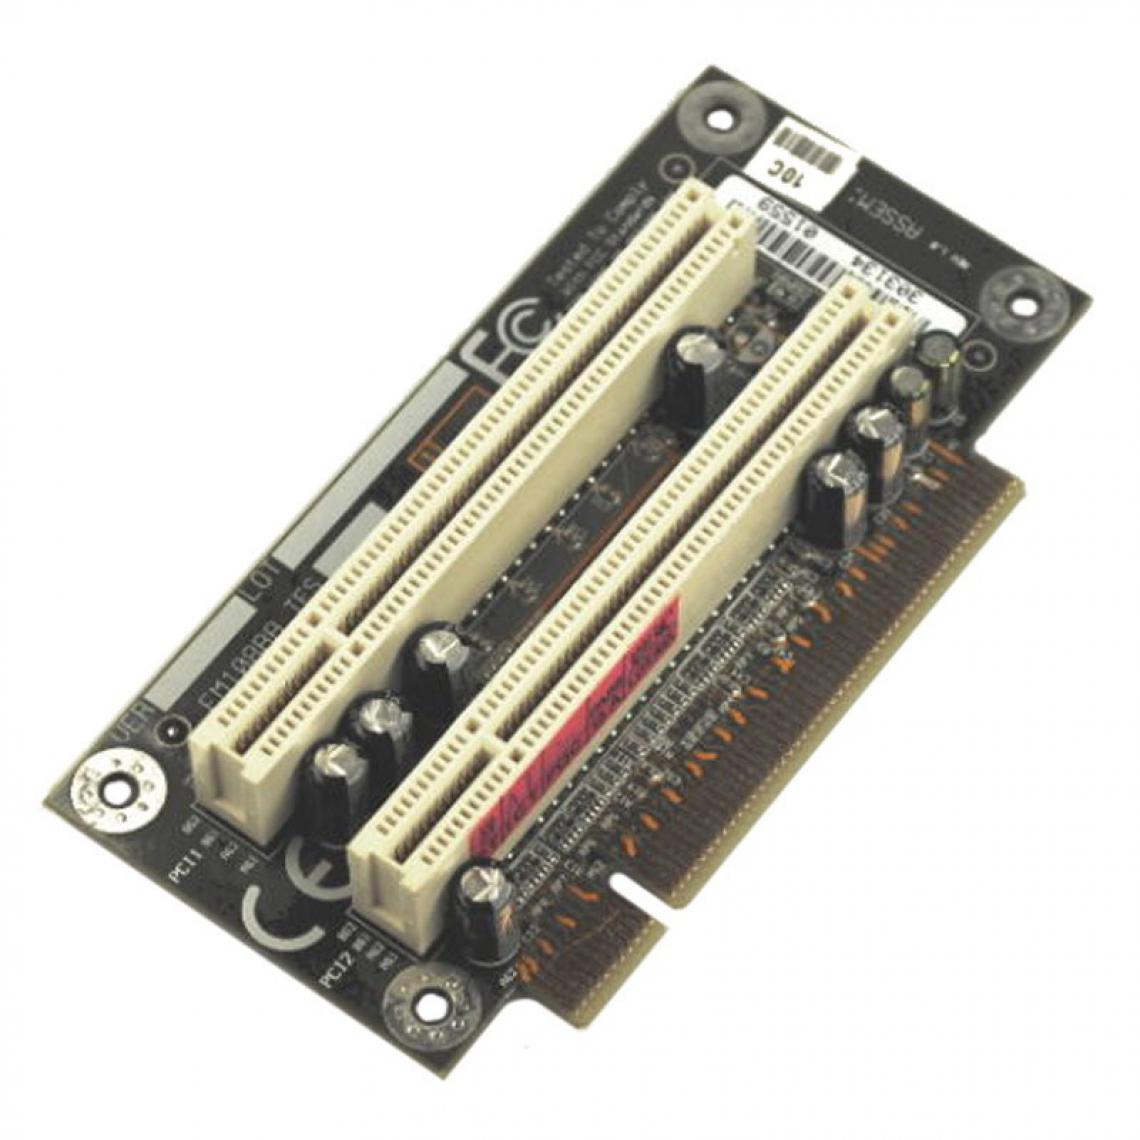 Fujitsu - Carte PCI Riser Card Fujitsu Siemens FM108RA CP136004 1xPCI Scenic C600 - Carte Contrôleur USB